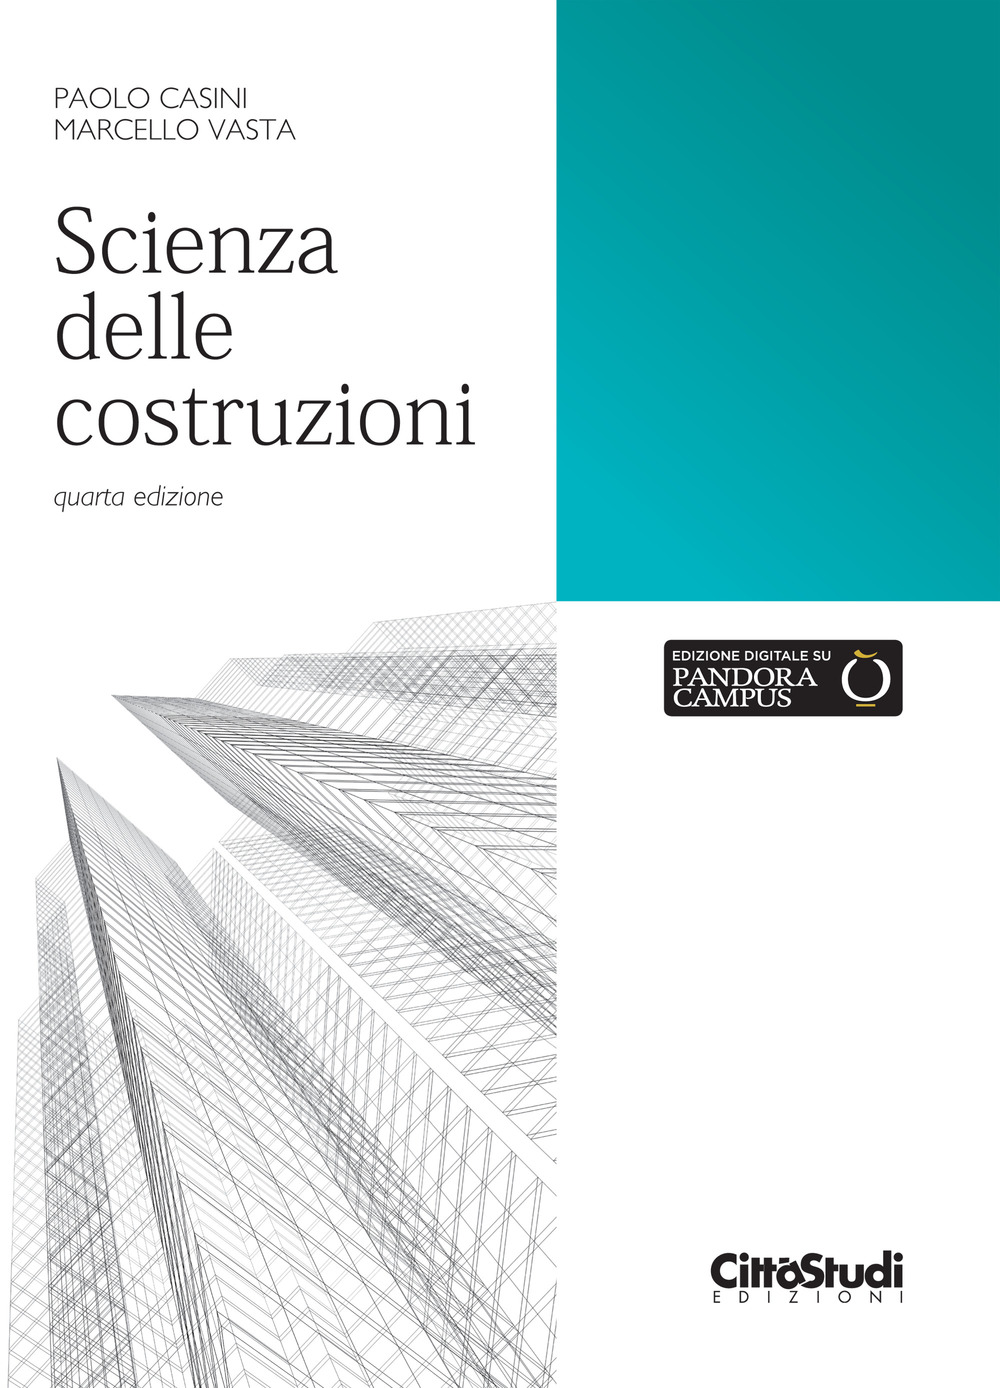 Libri Paolo Casini / Marcello Vasta - Scienza Delle Costruzioni NUOVO SIGILLATO, EDIZIONE DEL 27/09/2019 SUBITO DISPONIBILE